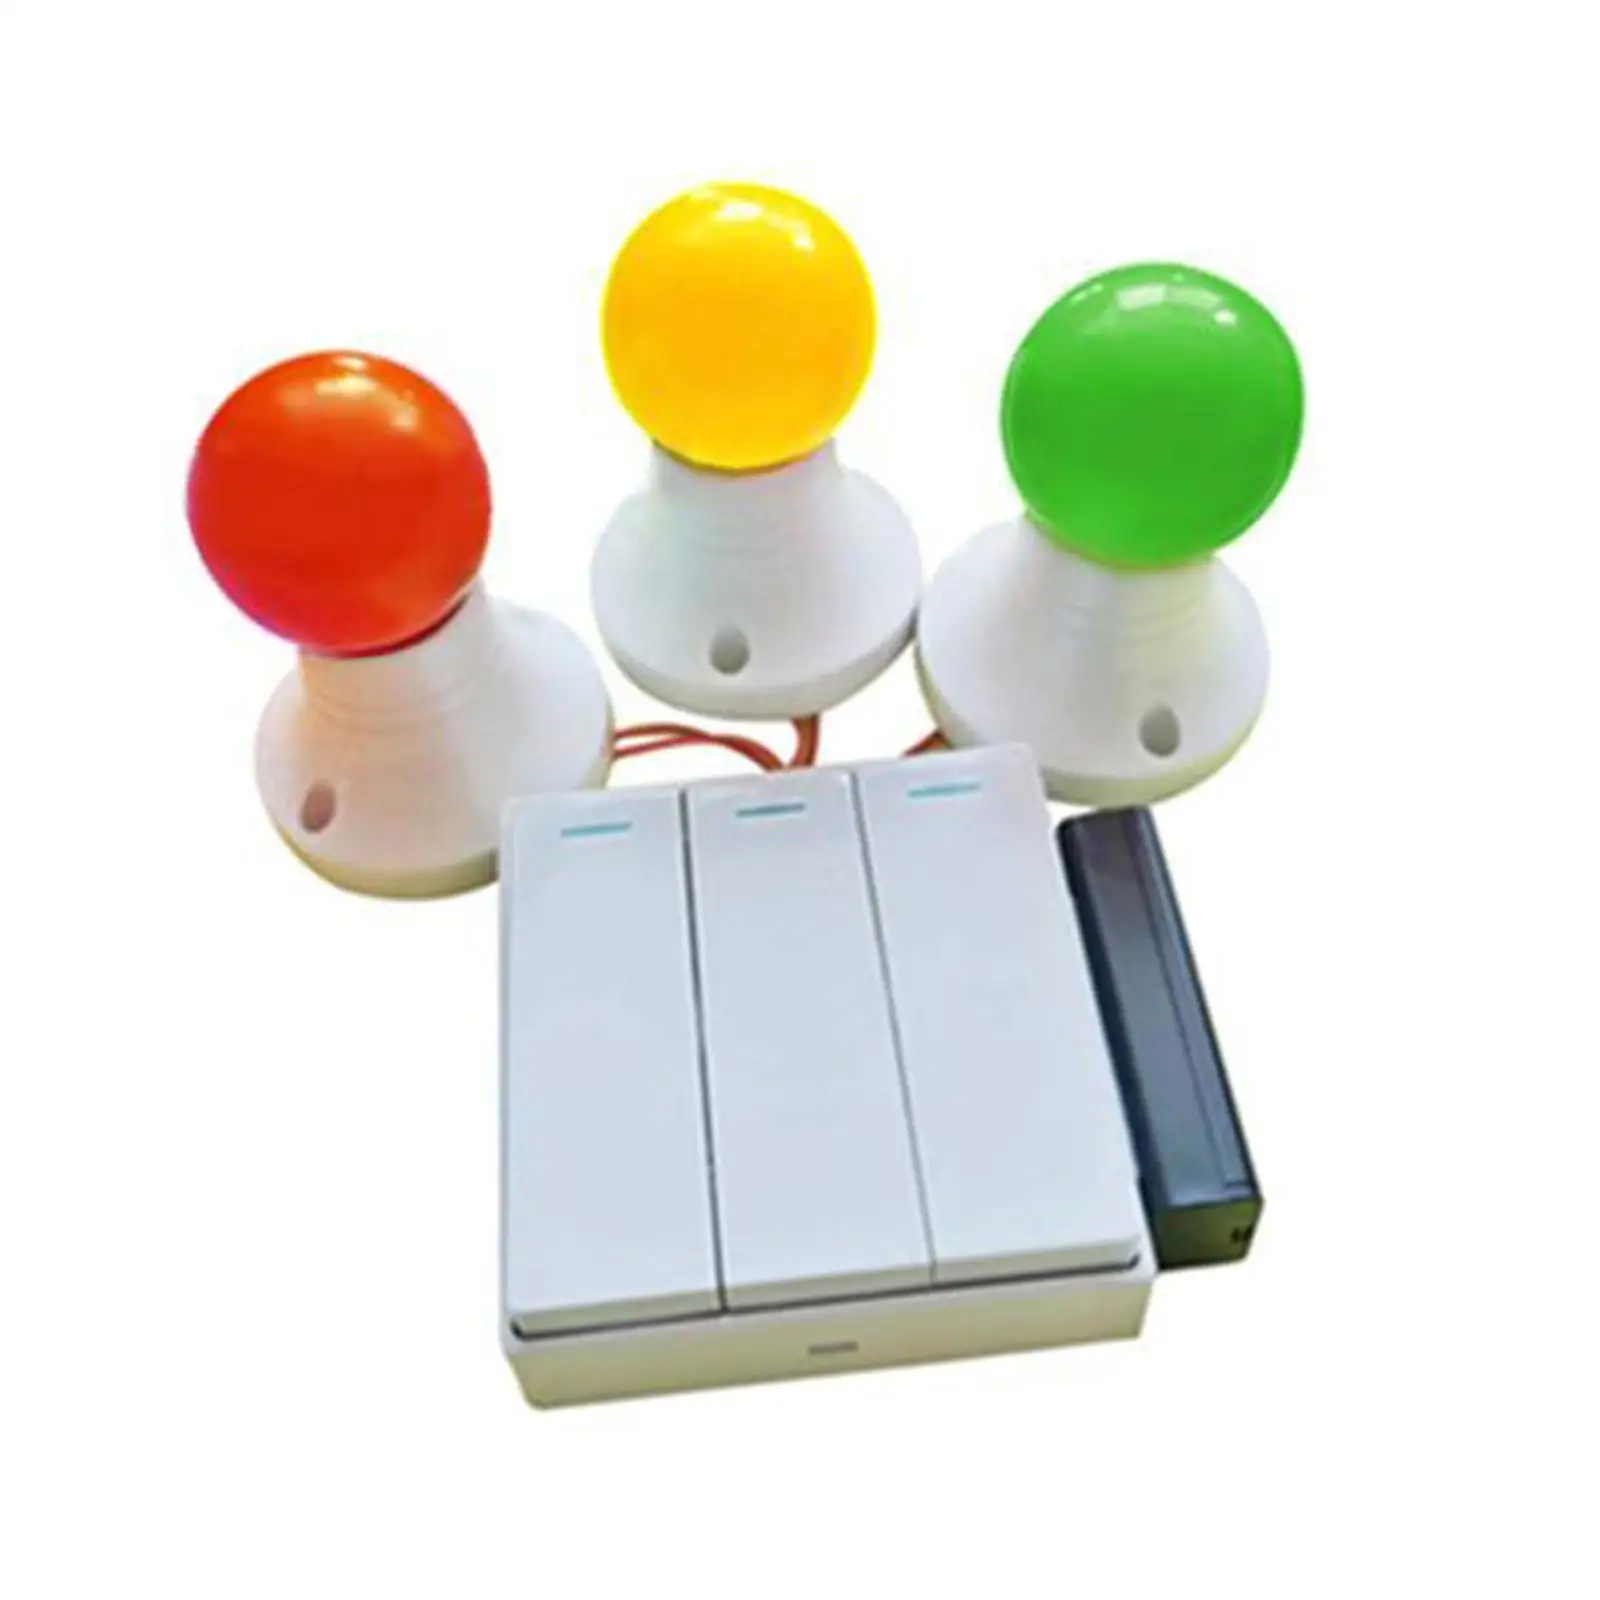 

Занятая доска огни игрушка DIY Аксессуары материал для самолета путешествия игрушки малыш